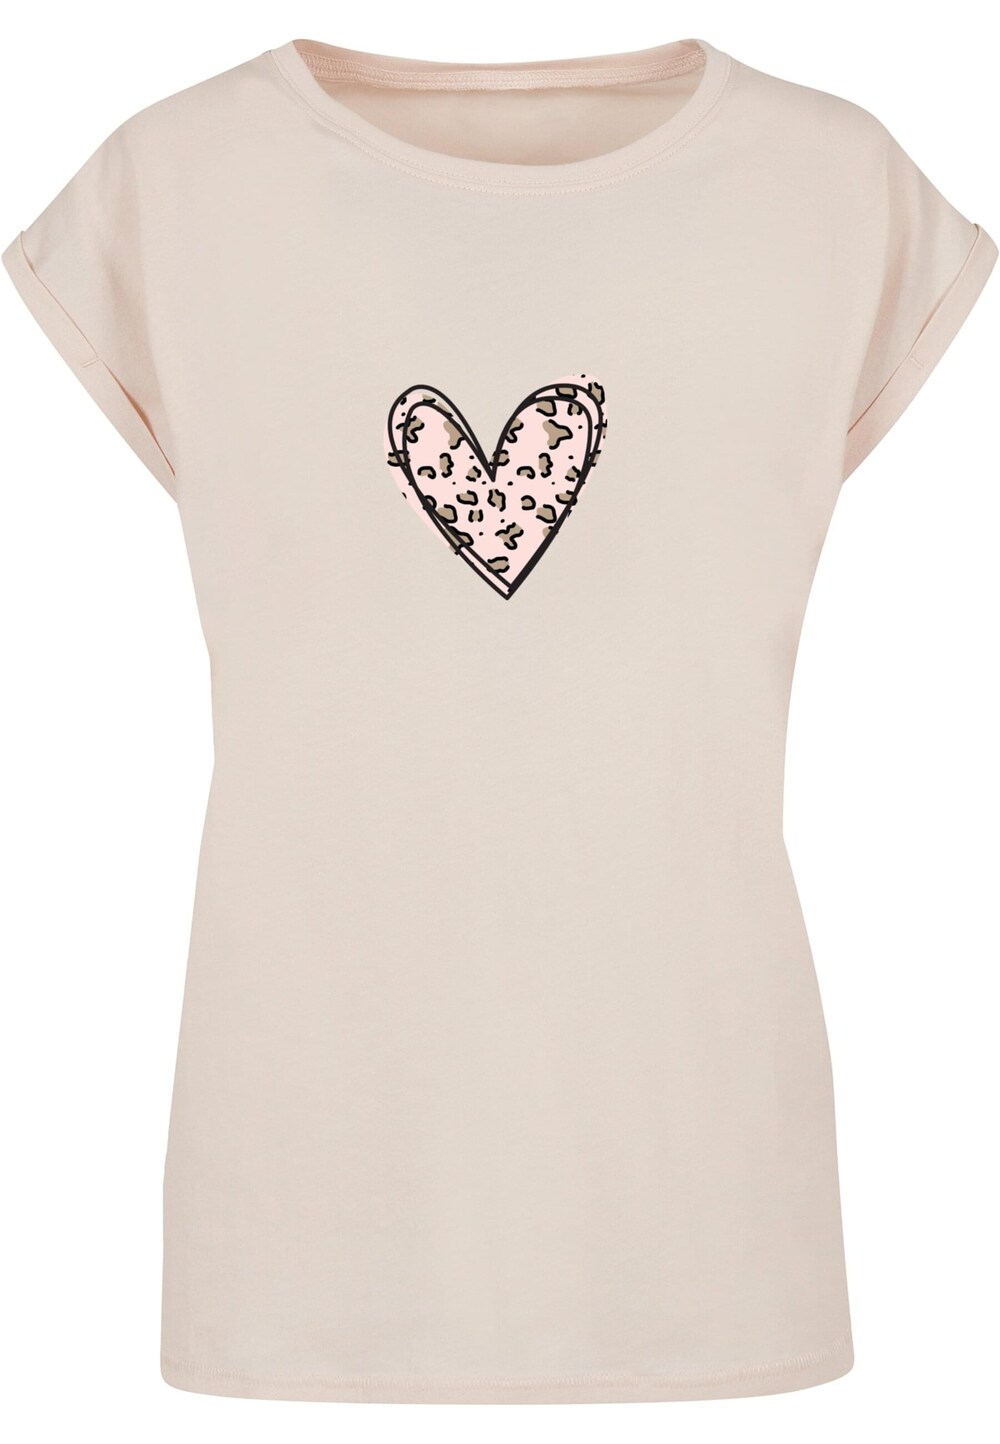 Рубашка Merchcode Valentines Day - Leopard Heart, песок